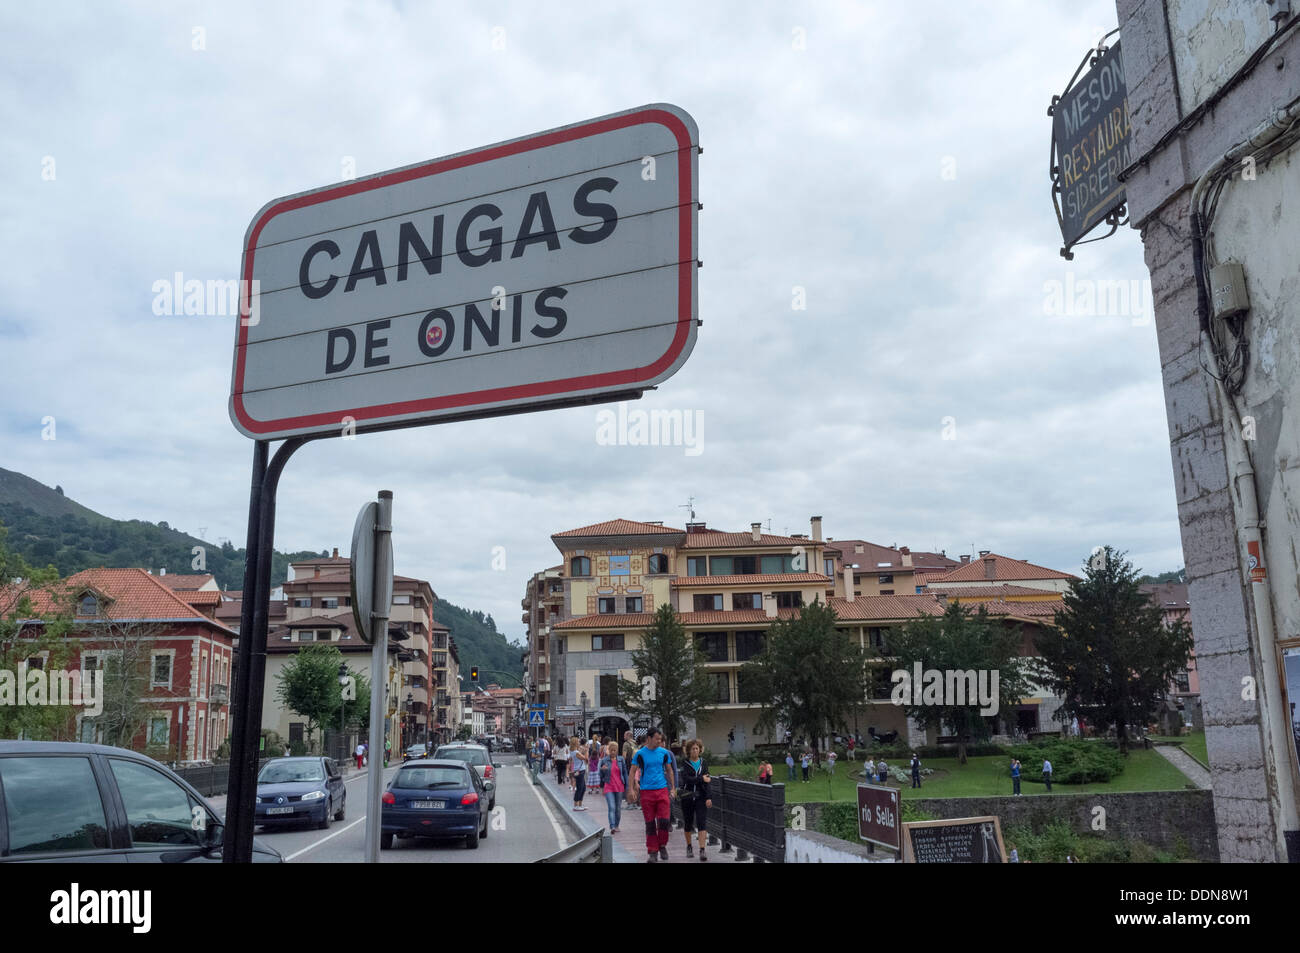 Cangas De Onis, Asturias, Spagna. Cartello stradale. Famouns per il ponte romano sul fiume Sella. Foto Stock